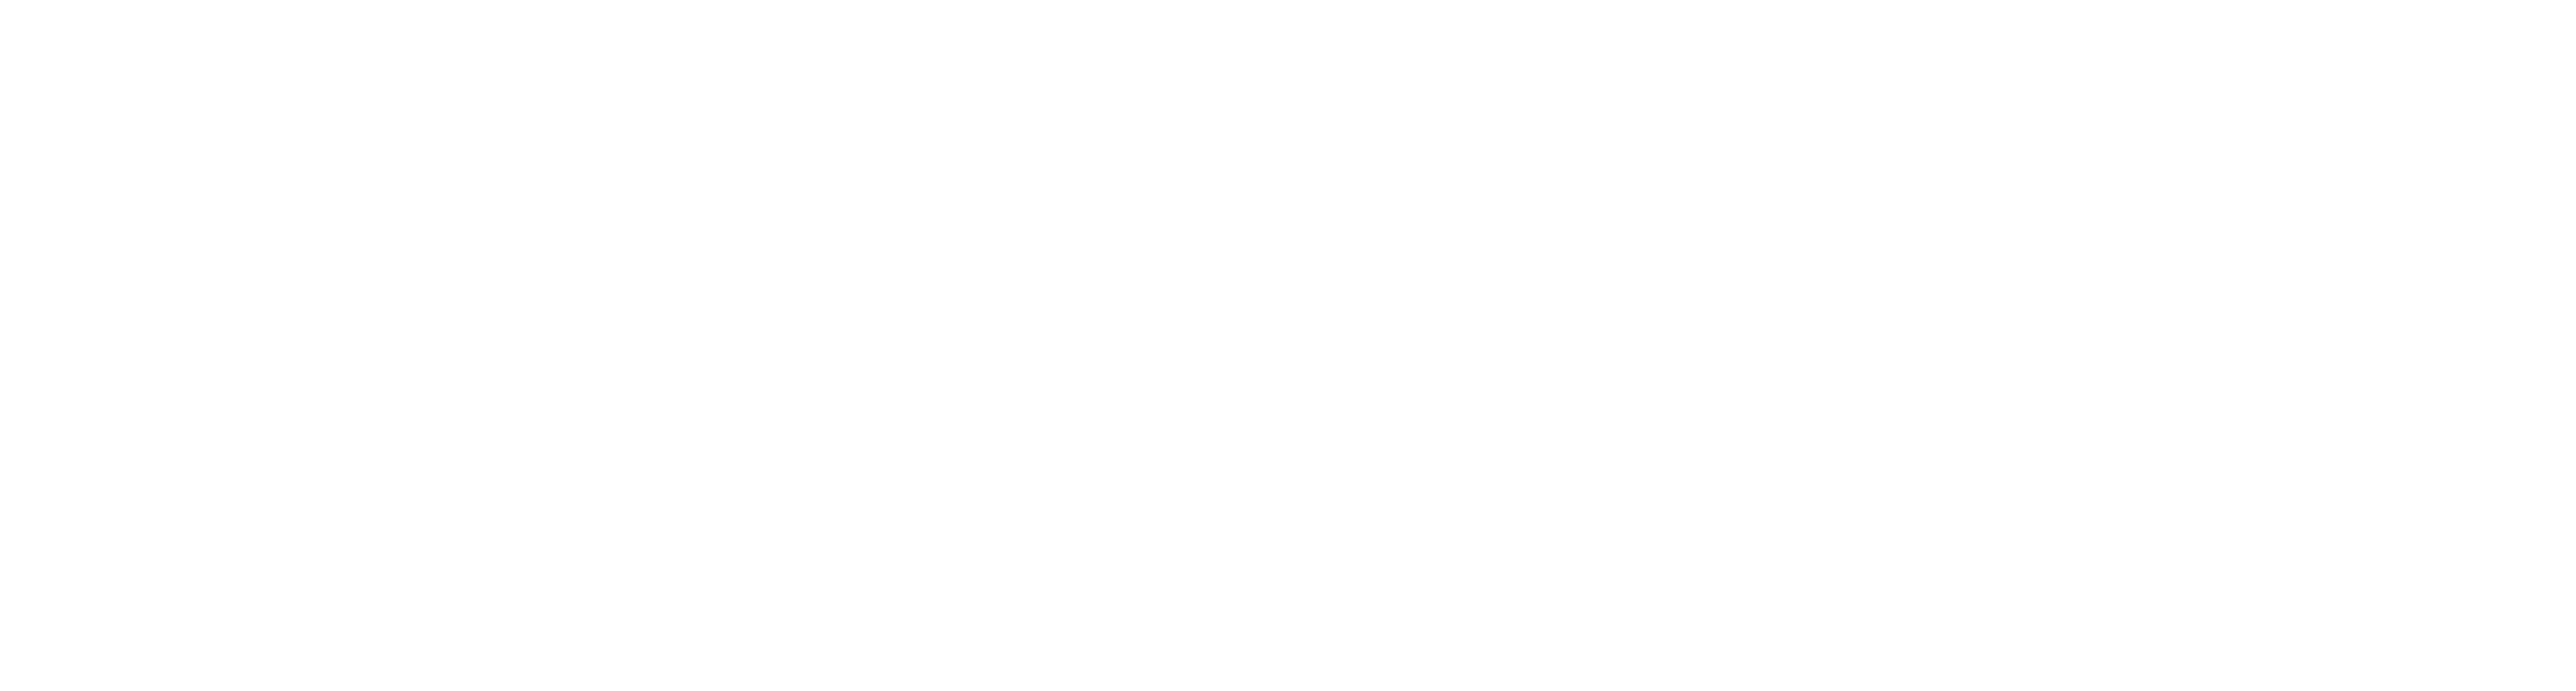 Tigerx